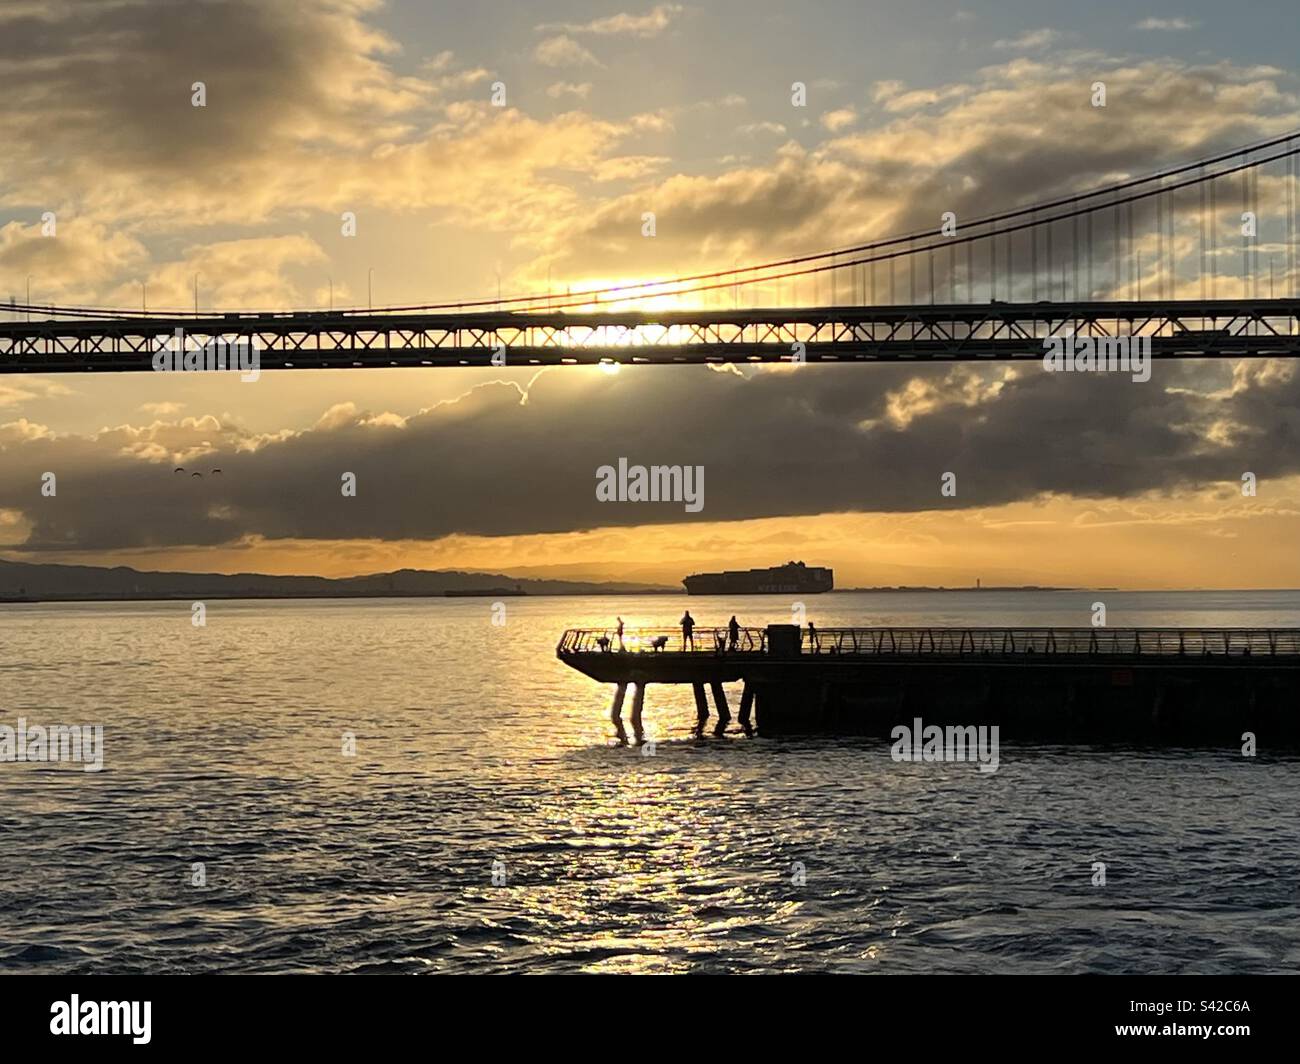 Les gens pêchent depuis une jetée publique avec le pont San Francisco - Oakland Bay Bridge et un grand navire au loin Banque D'Images